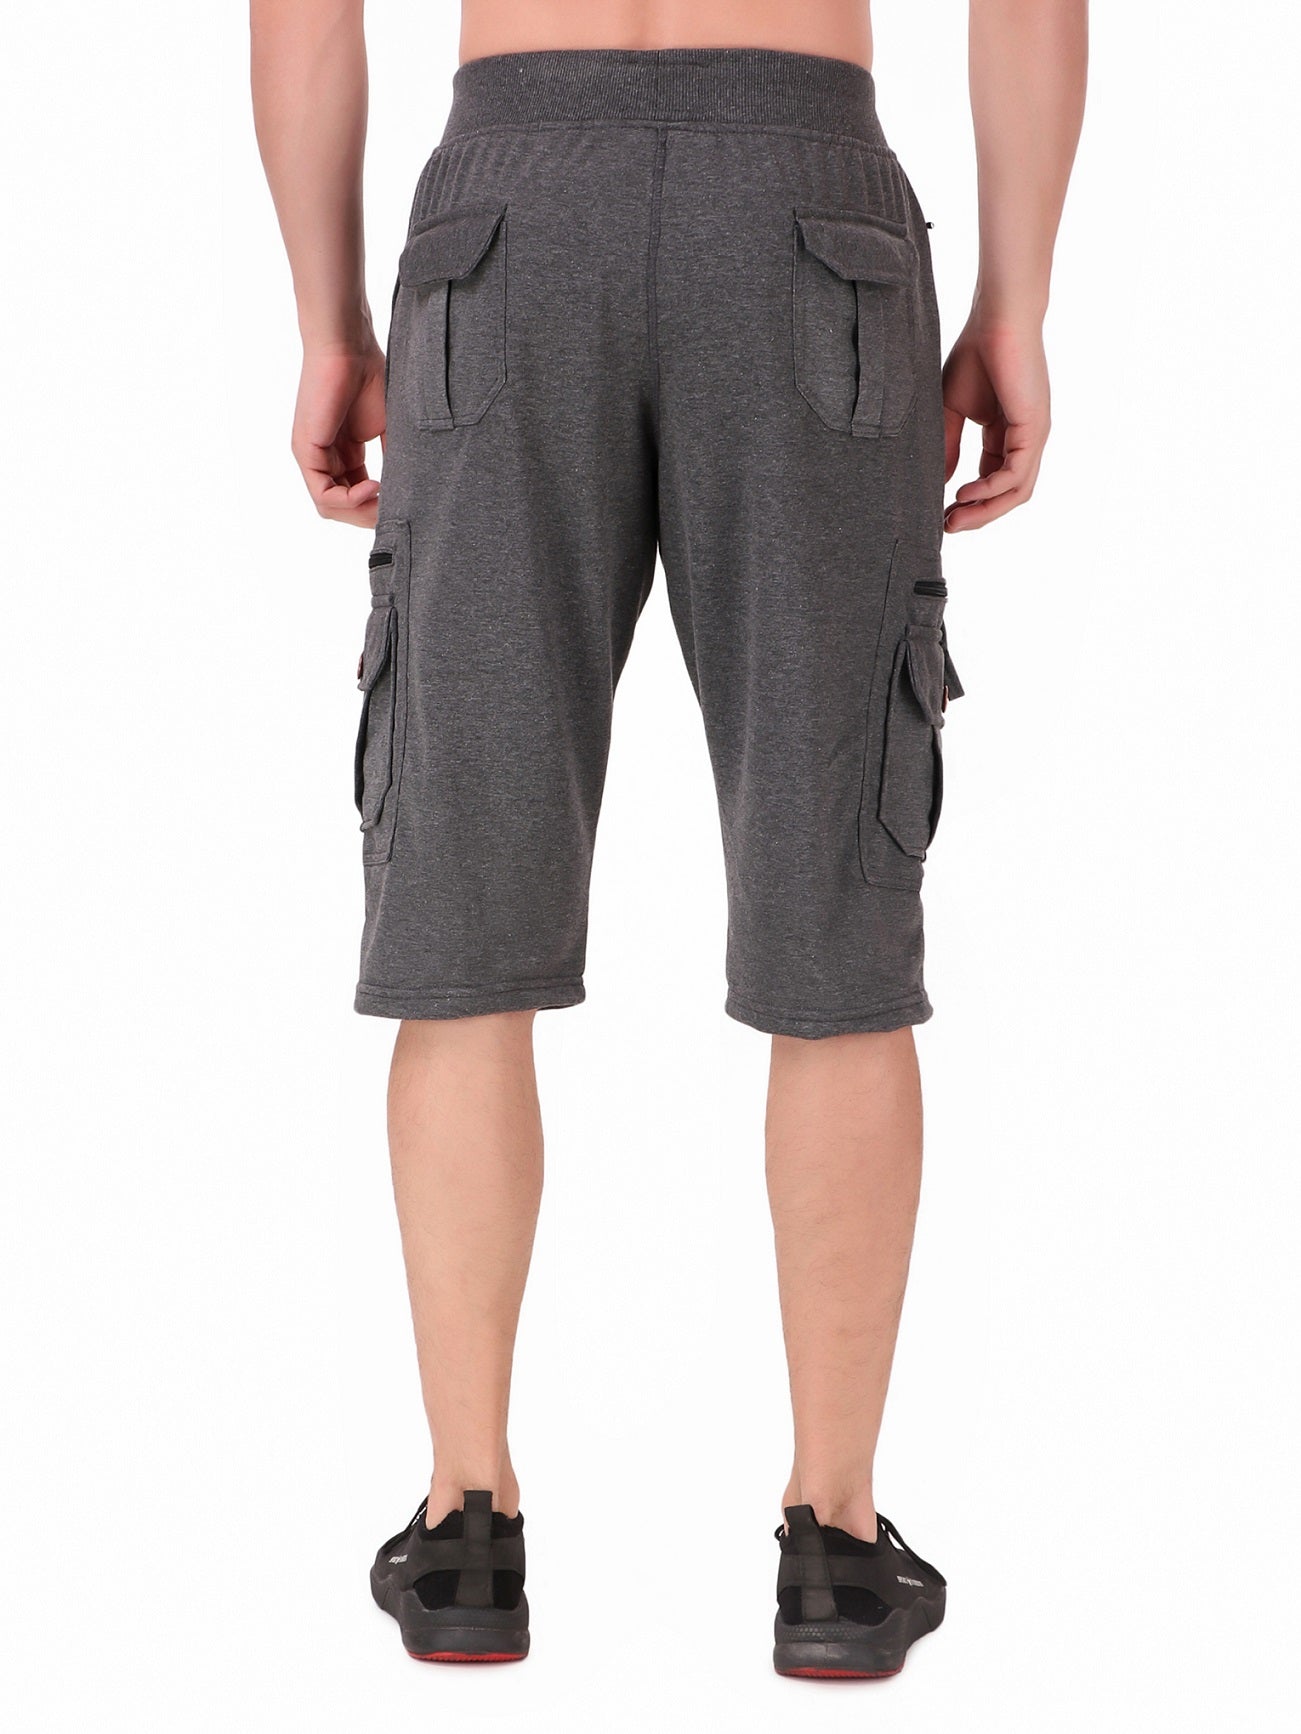 Men's Cargo Capri Shorts With 9 Pockets